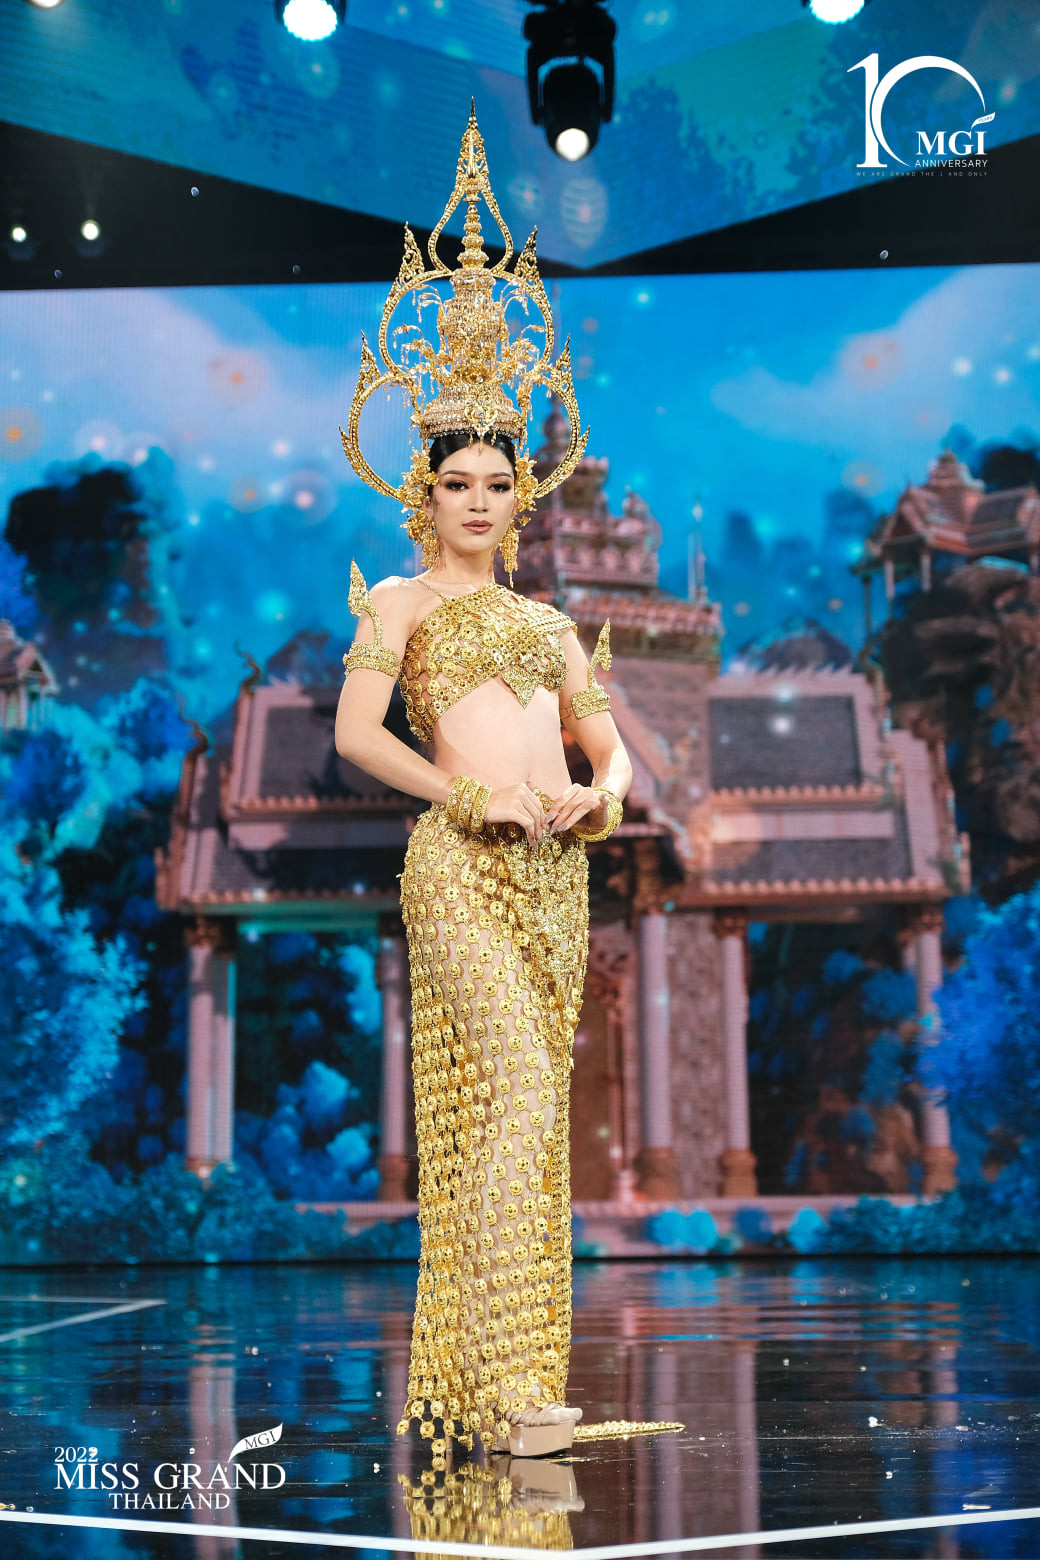 trajes tipicos de candidatas a miss grand thailand 2022. - Página 3 Vtos7S